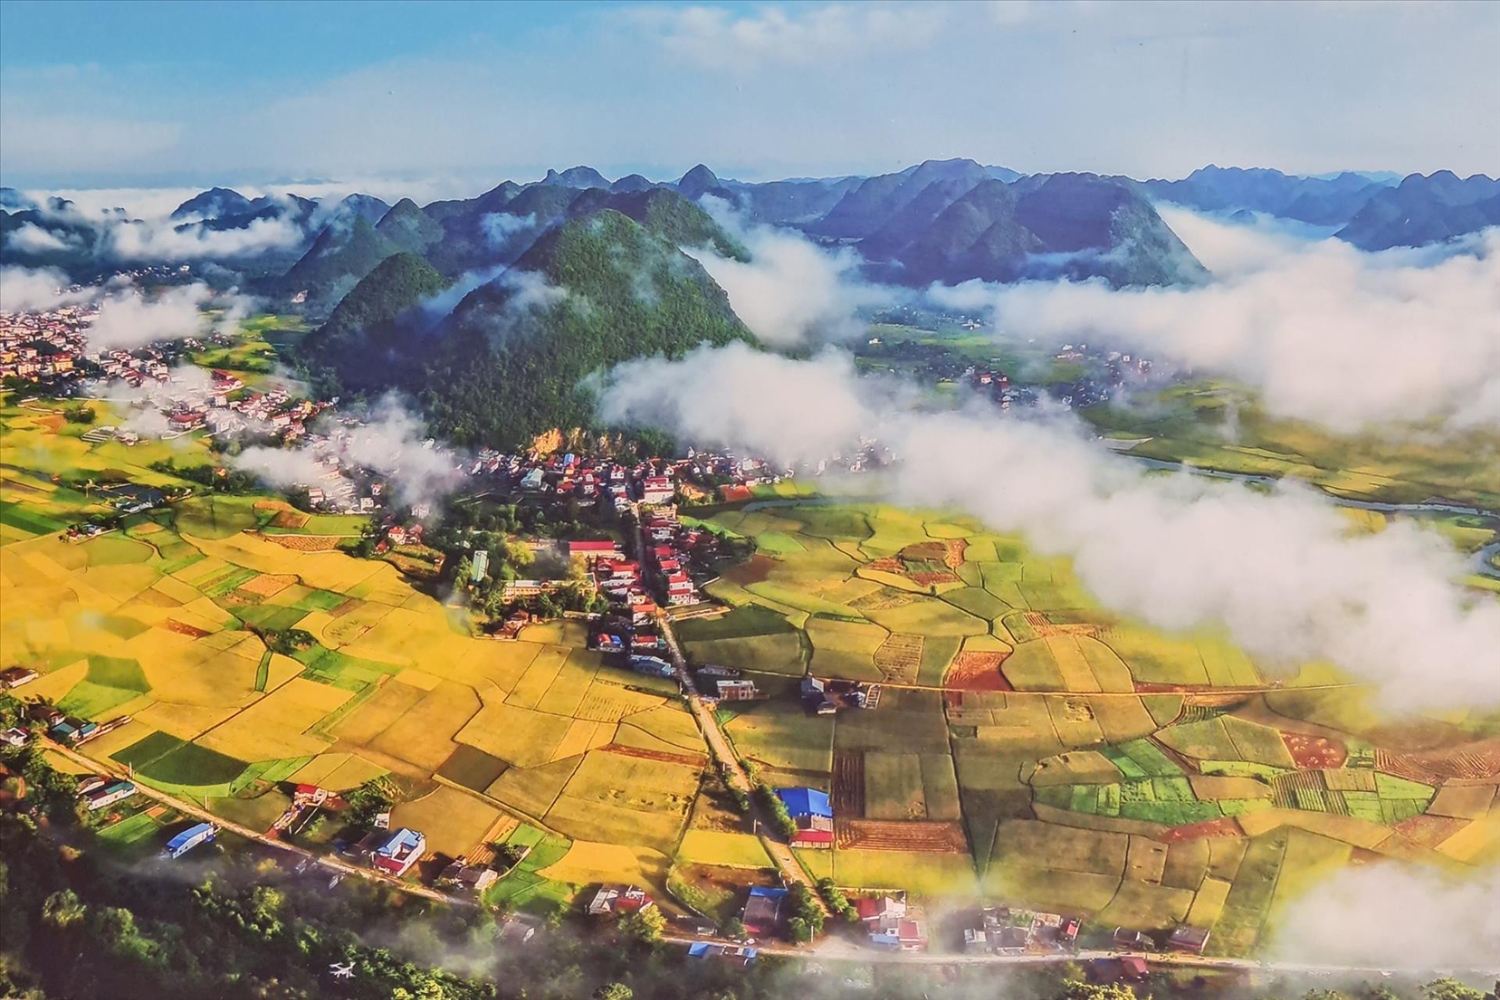 Toàn cảnh Thung lũng Bắc Sơn được chụp từ trên mây, một loại hình du lịch Danh lam thắng cảnh nổi tiếng của tỉnh Lạng Sơn.